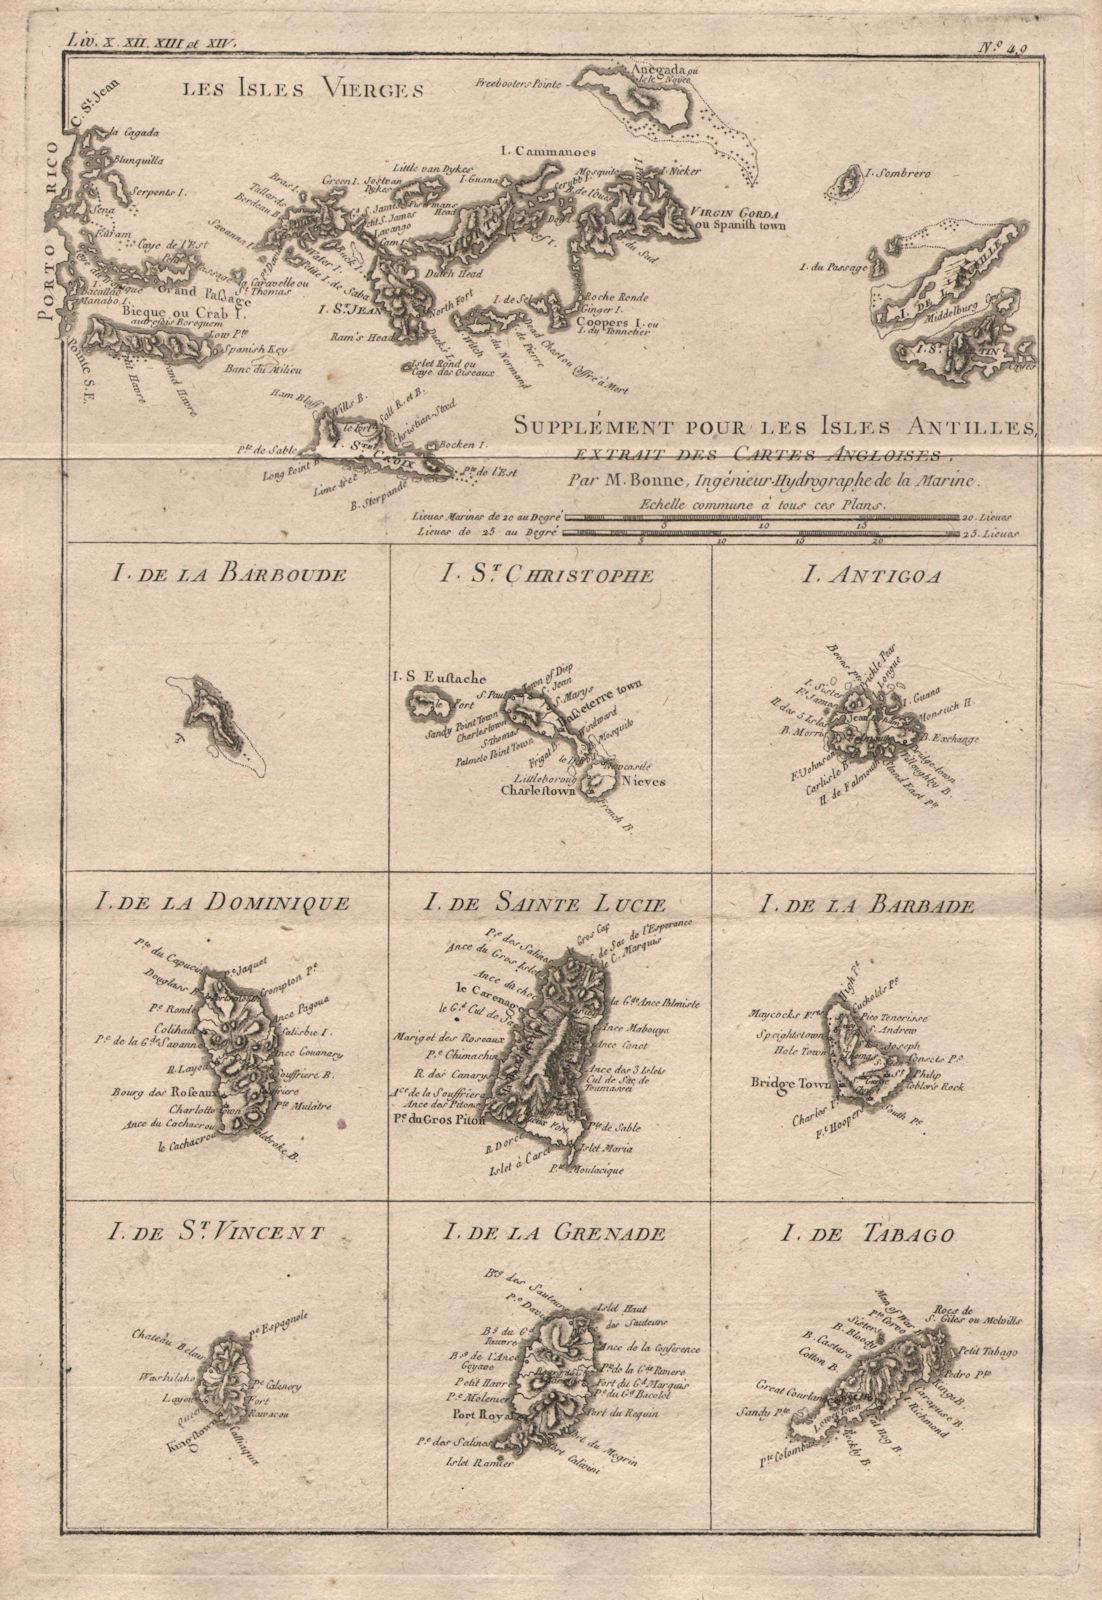 Associate Product Isles Antilles Extrait des Cartes Angloises. British West Indies. BONNE 1780 map